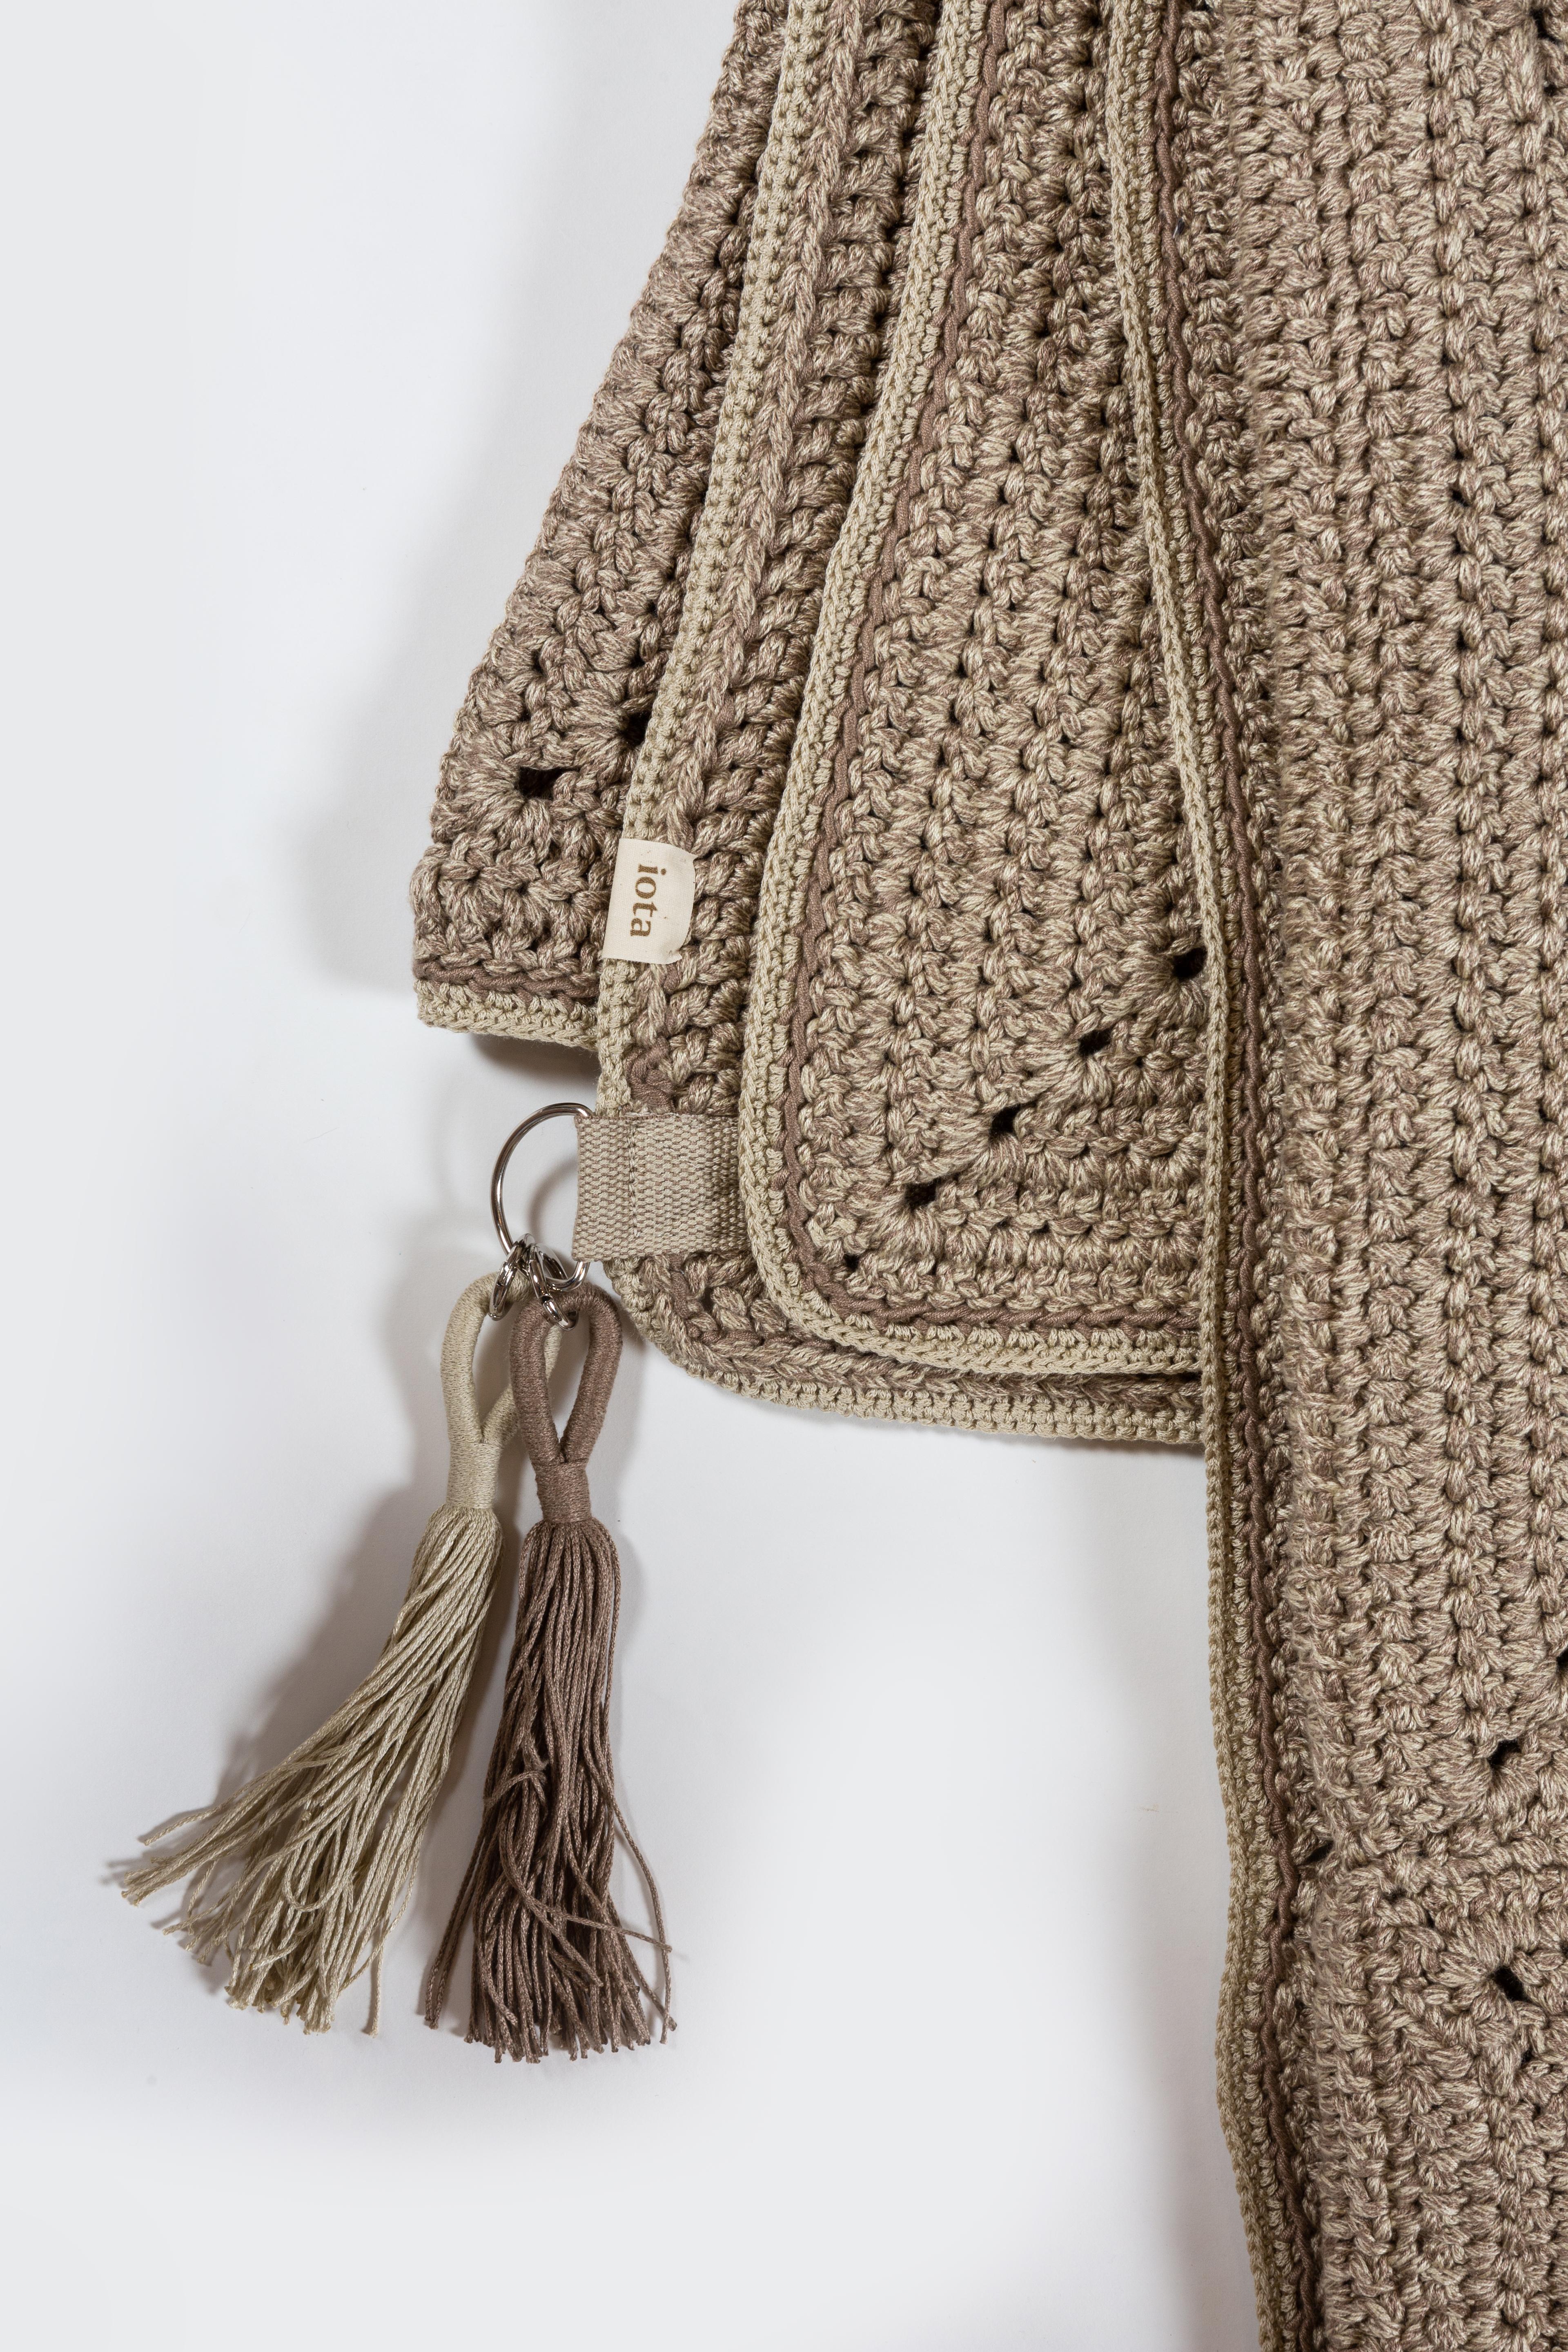 21st Century Asian Brown Beige Outdoor Indoor 200X200 cm Handmade Crochet Rug 9